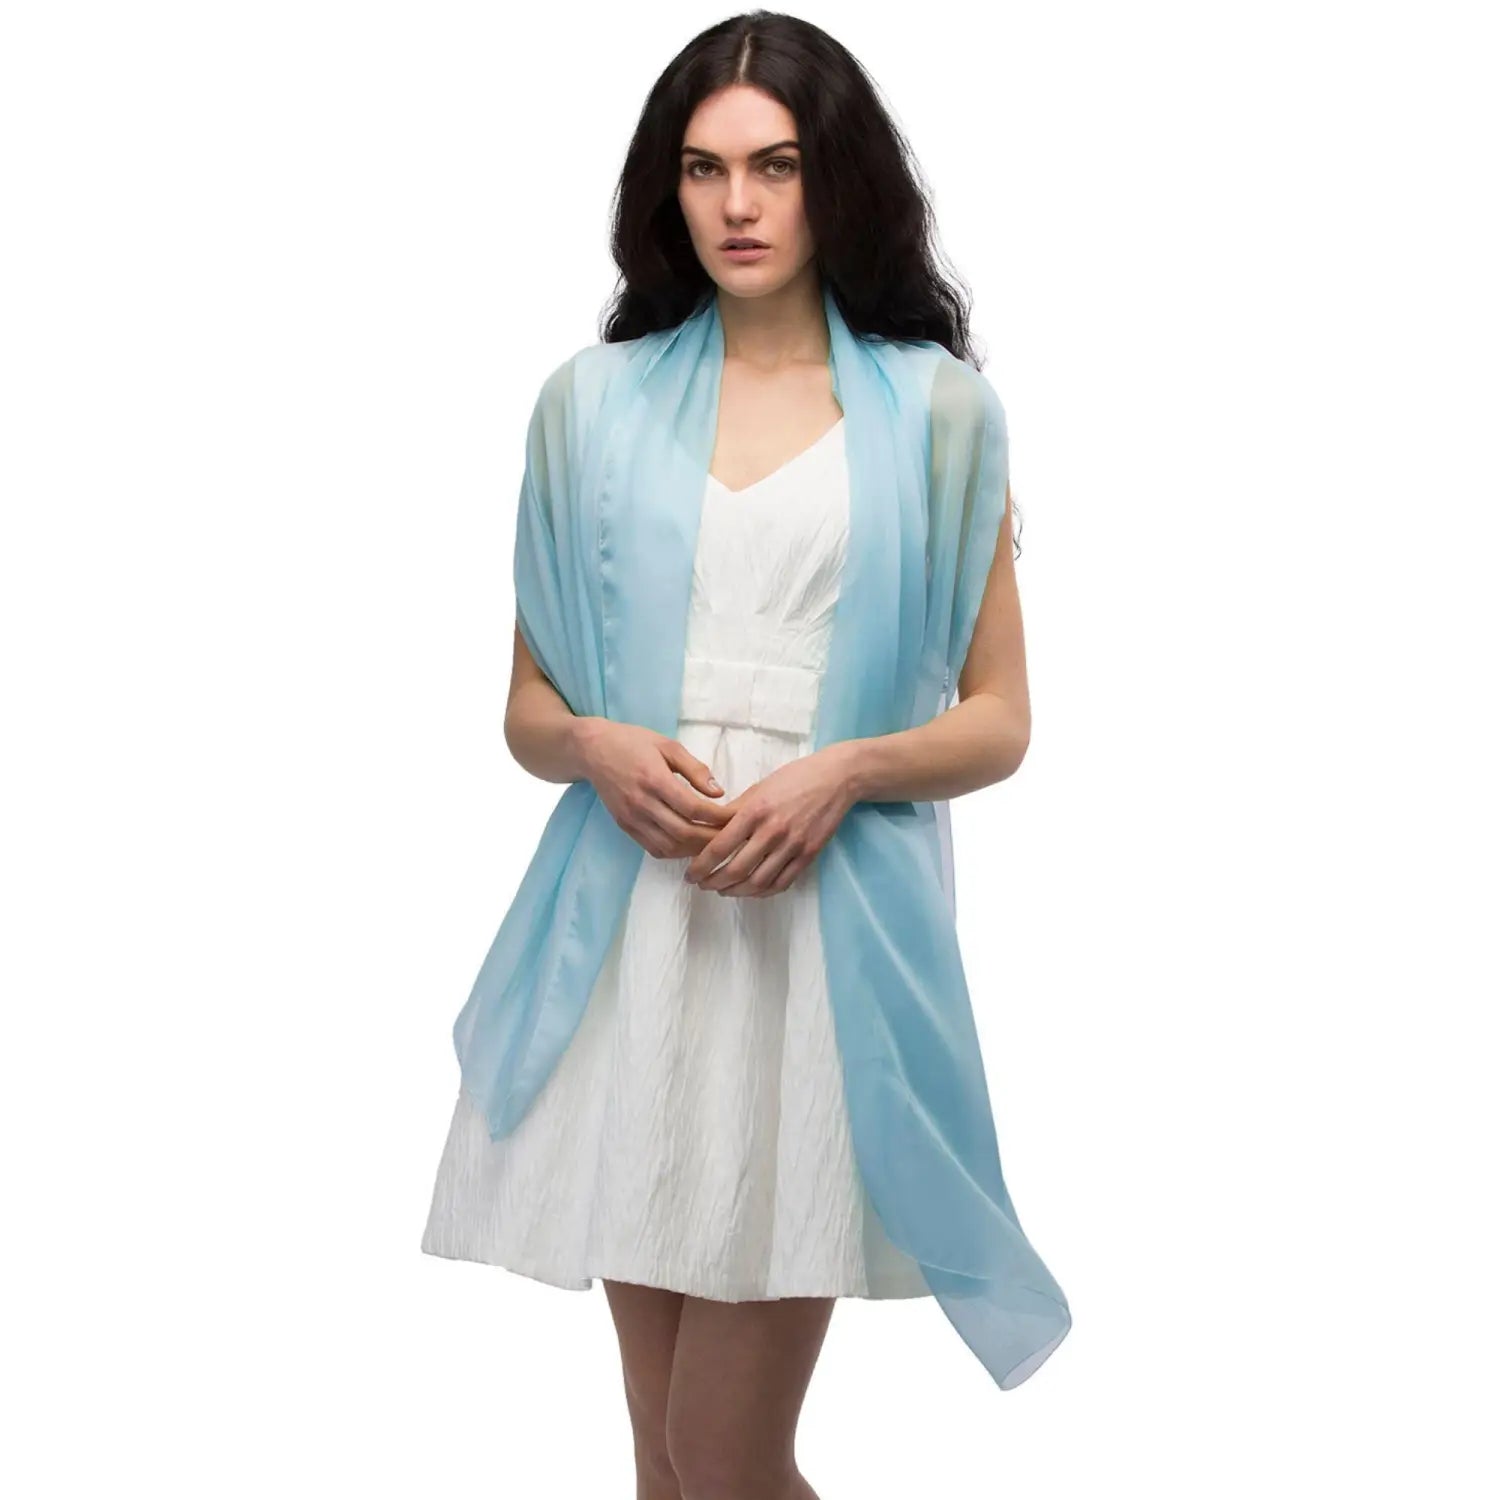 Woman wearing blue and white chiffon shawl, semi-opaque - Plain Chiffon Shawl